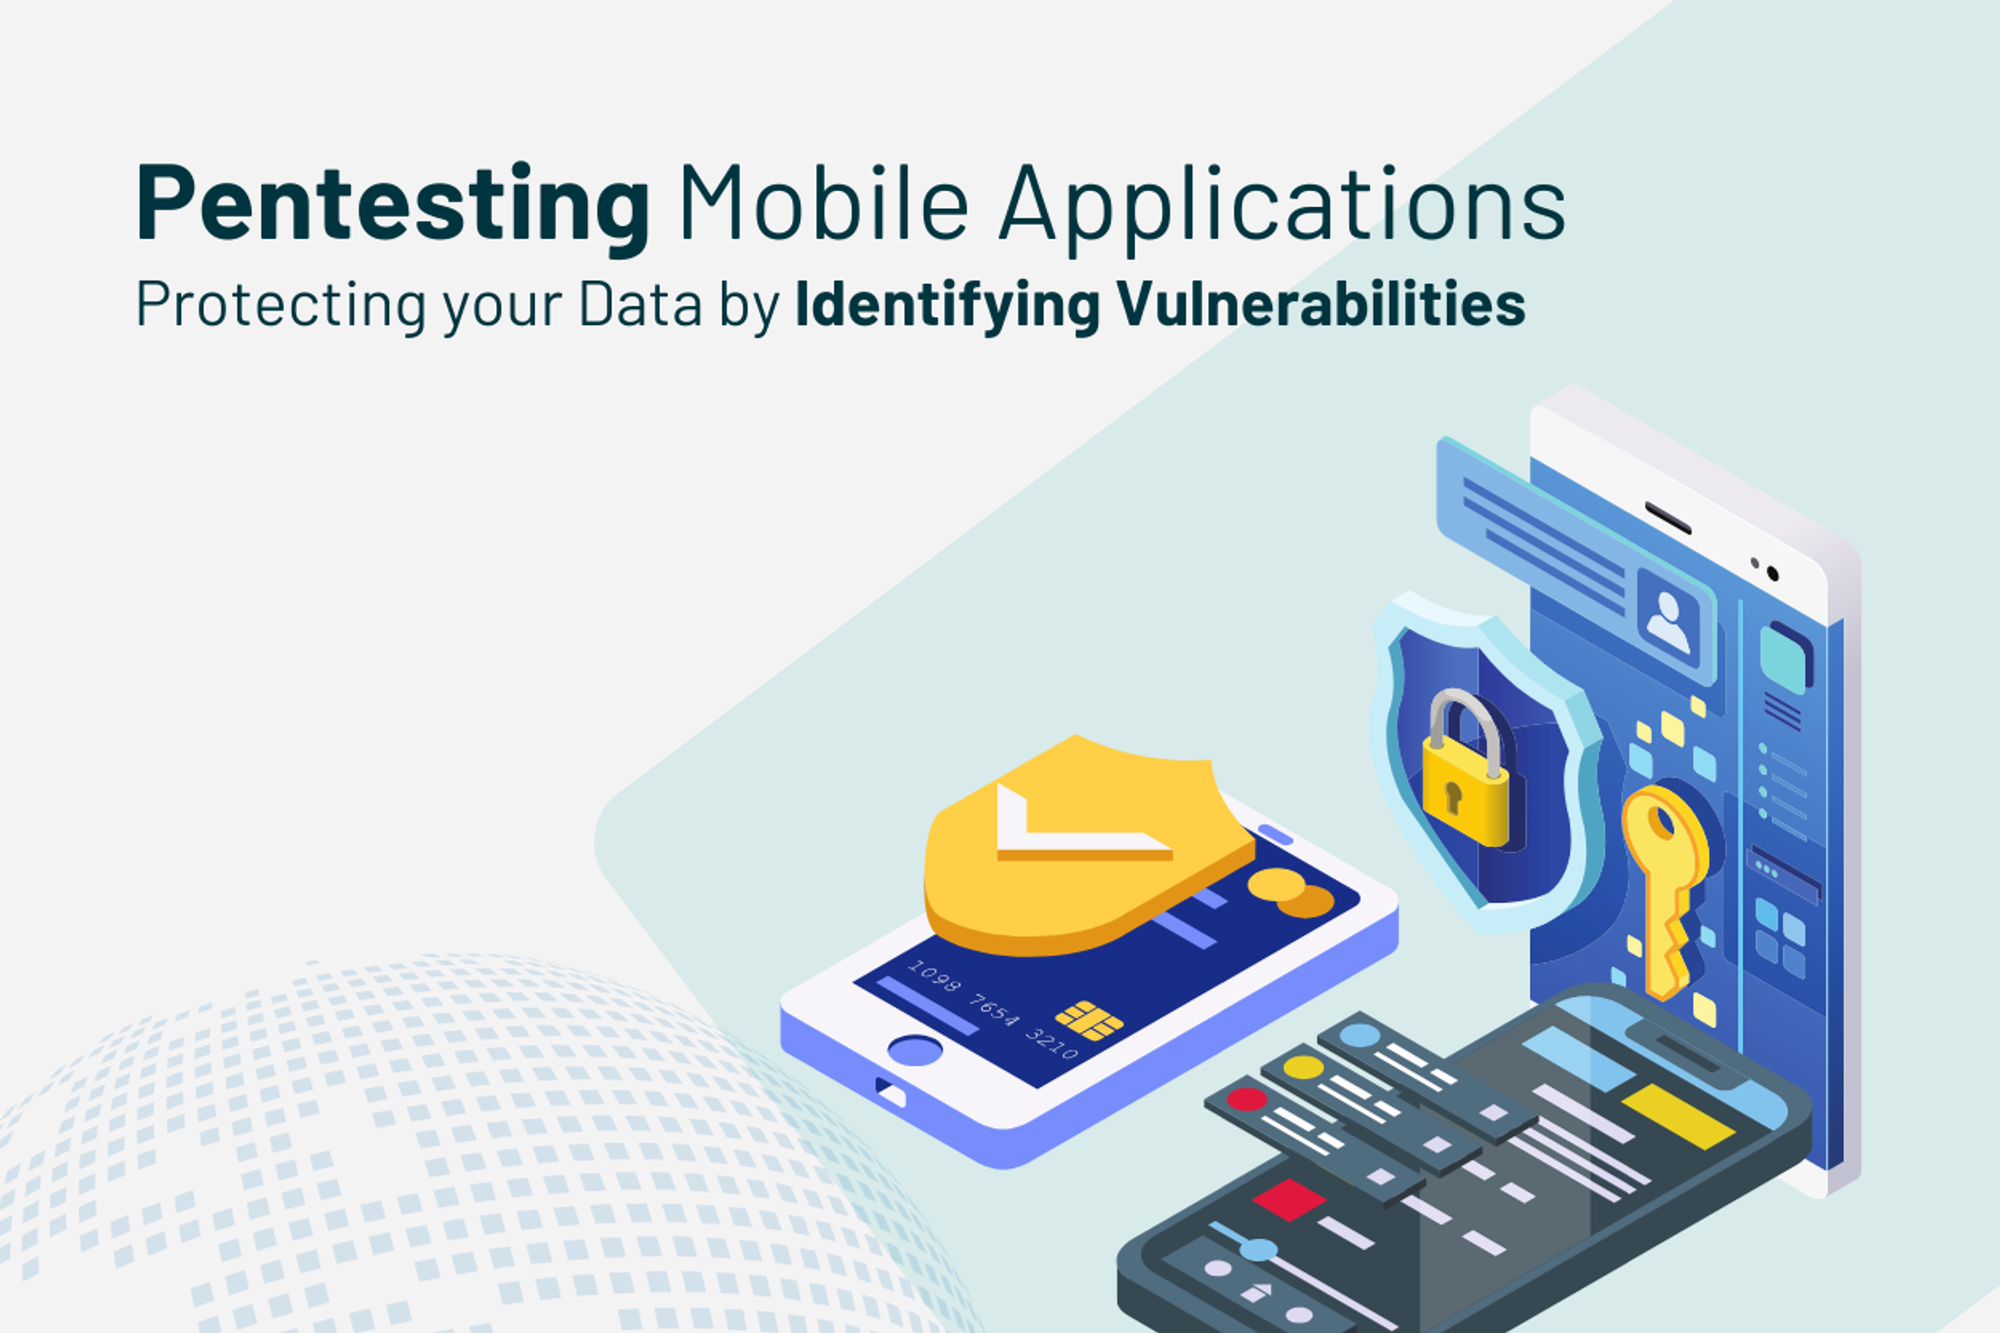 Pentesting de Aplicaciones Móviles: Protegiendo tus Datos al Identificar Vulnerabilidades